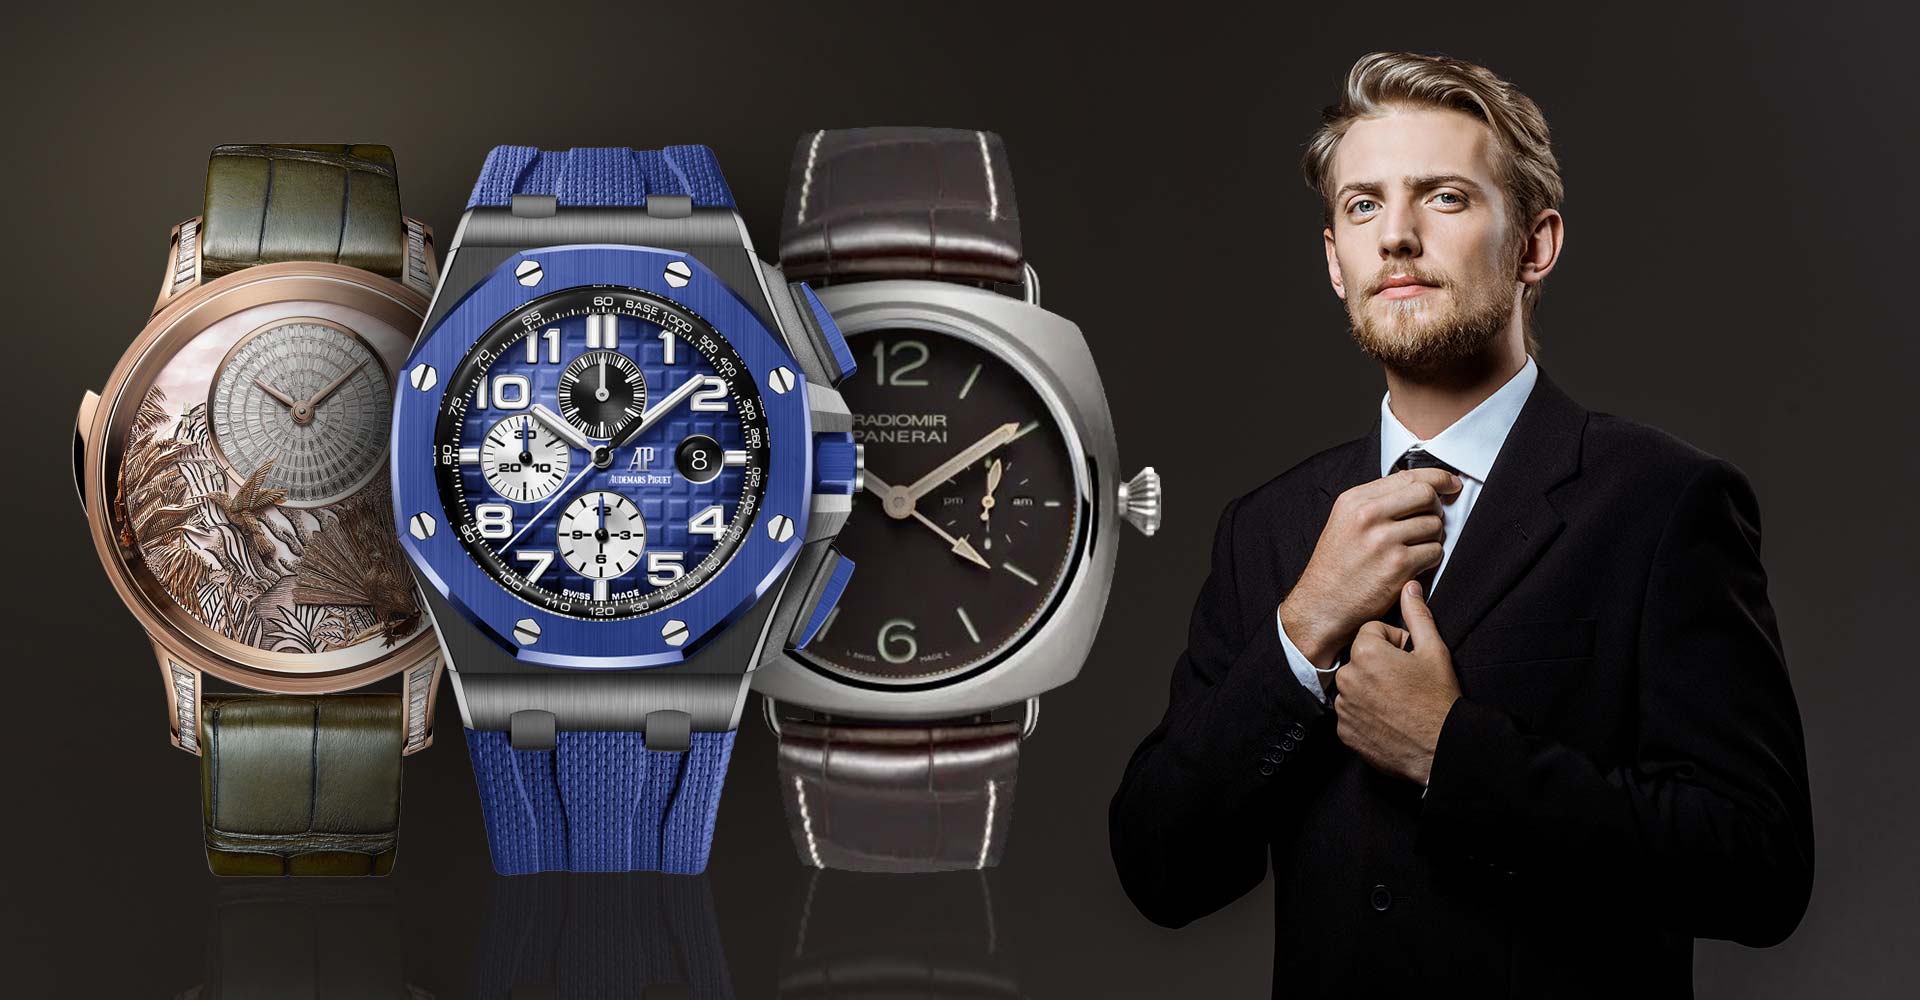 10 Brand Jam Tangan Pria Termahal di Dunia, Bisa Untuk Investasi